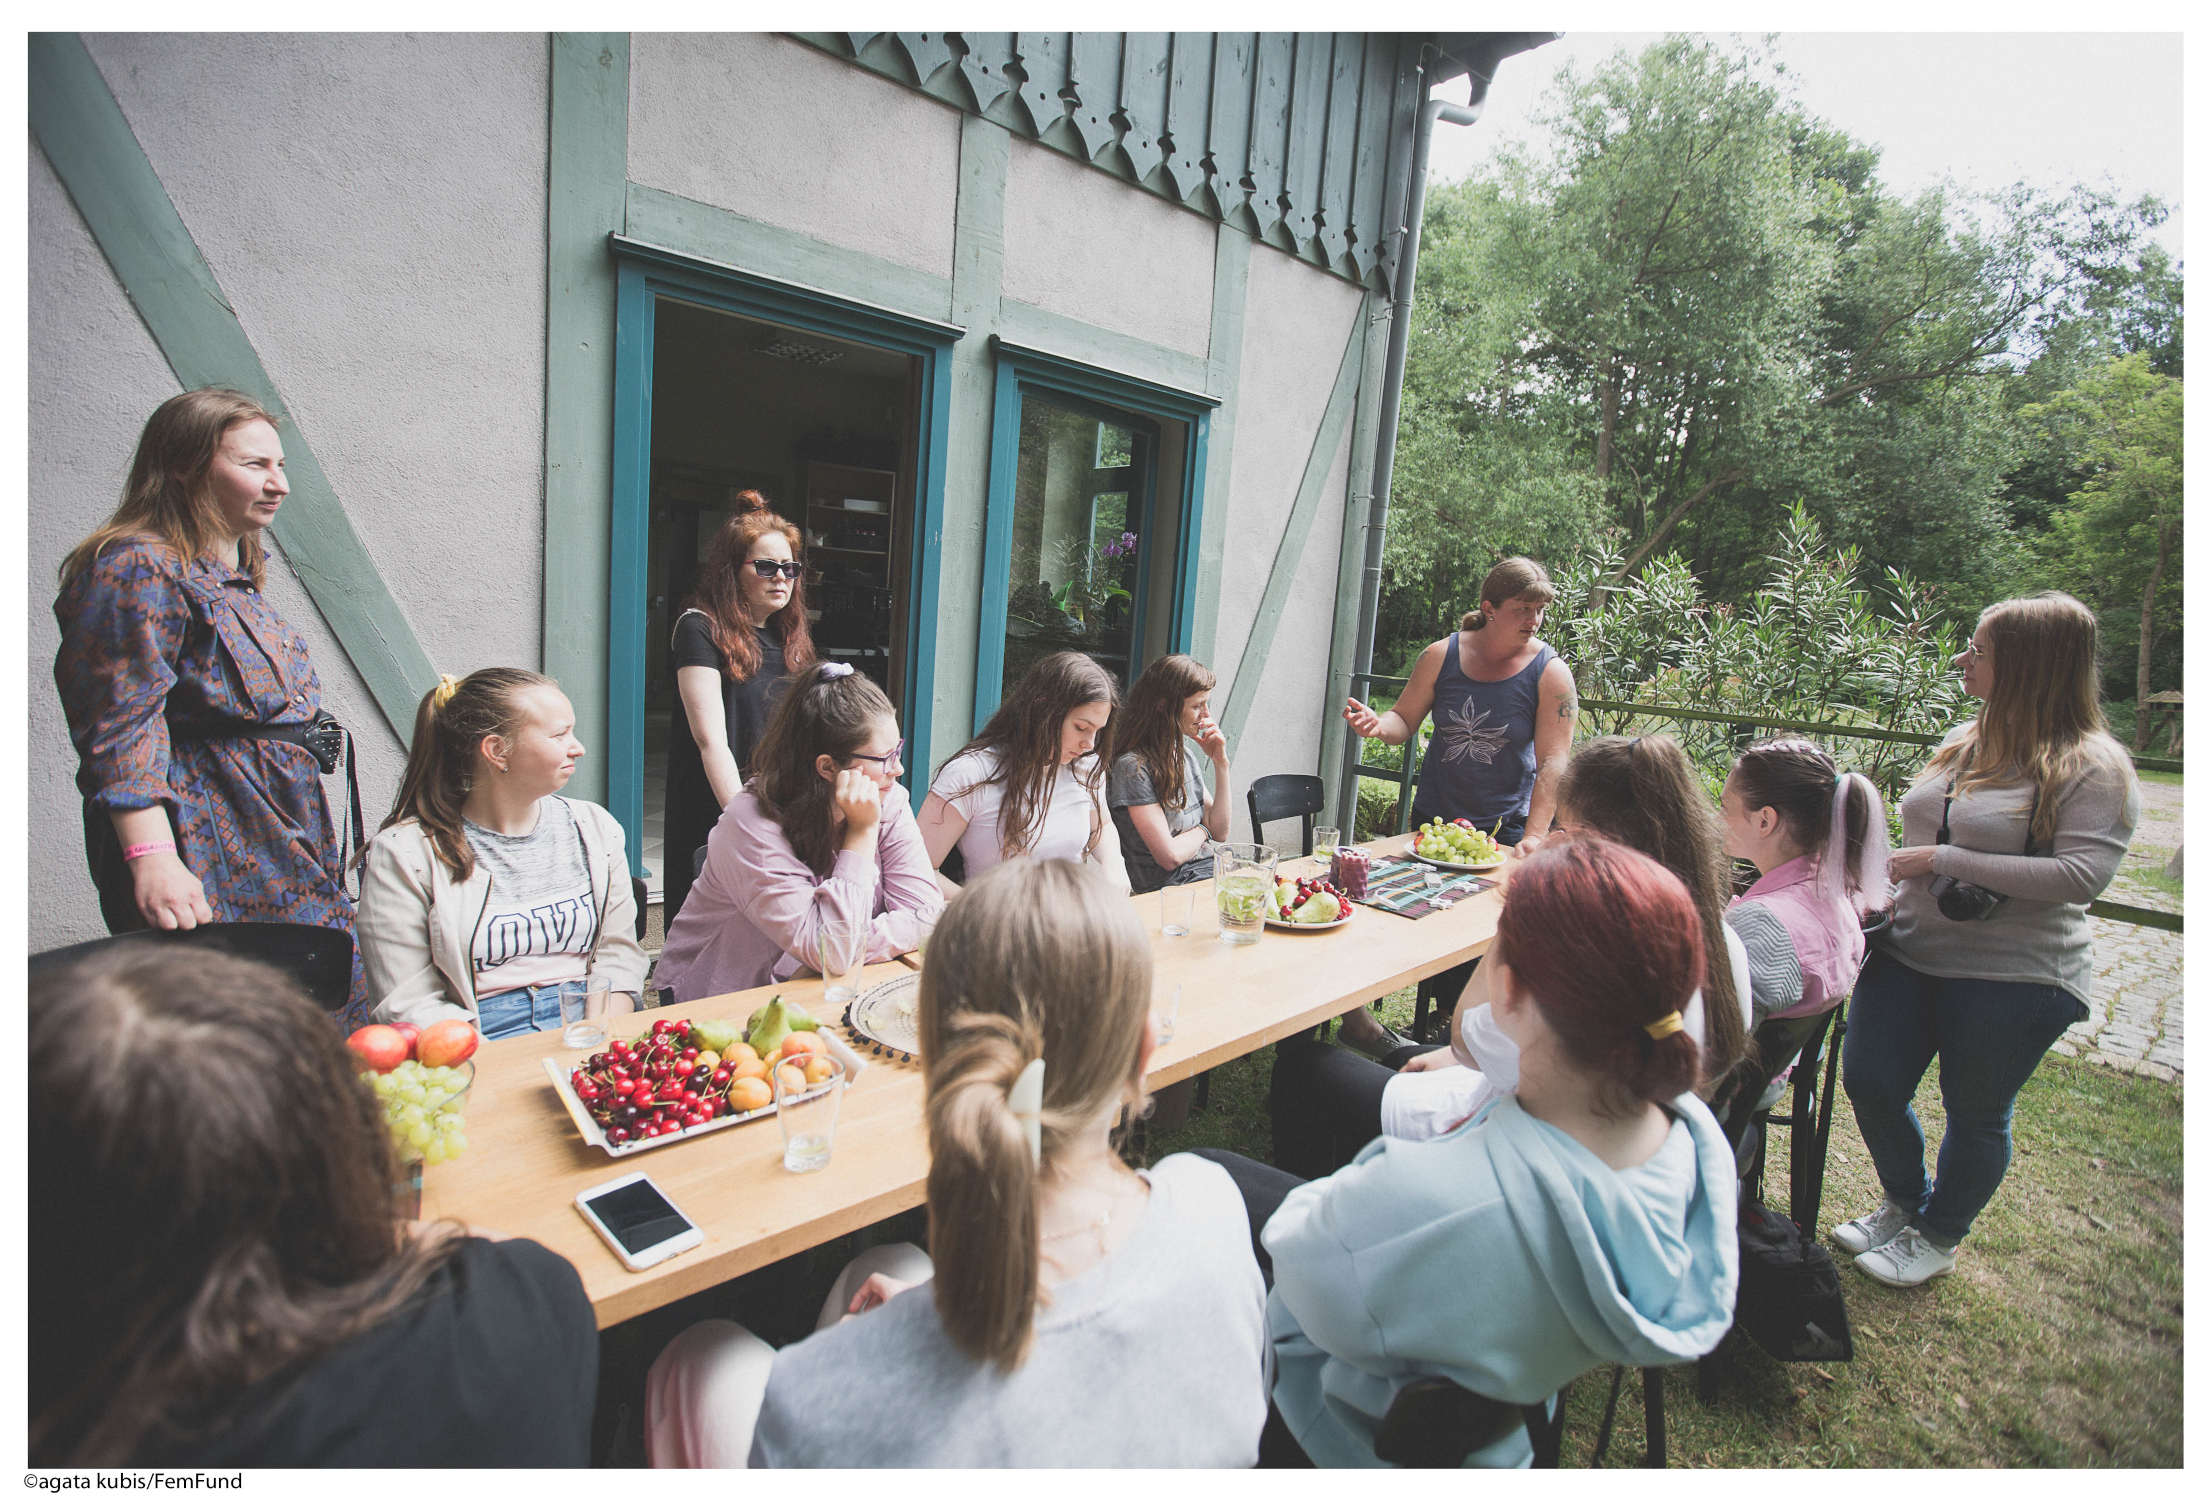 spotkanie rosyjskojęzycznych uczestniczek, przy stole pełnym owoców w otoczeniu zieleni, w przerwie pomiędzy warsztatami